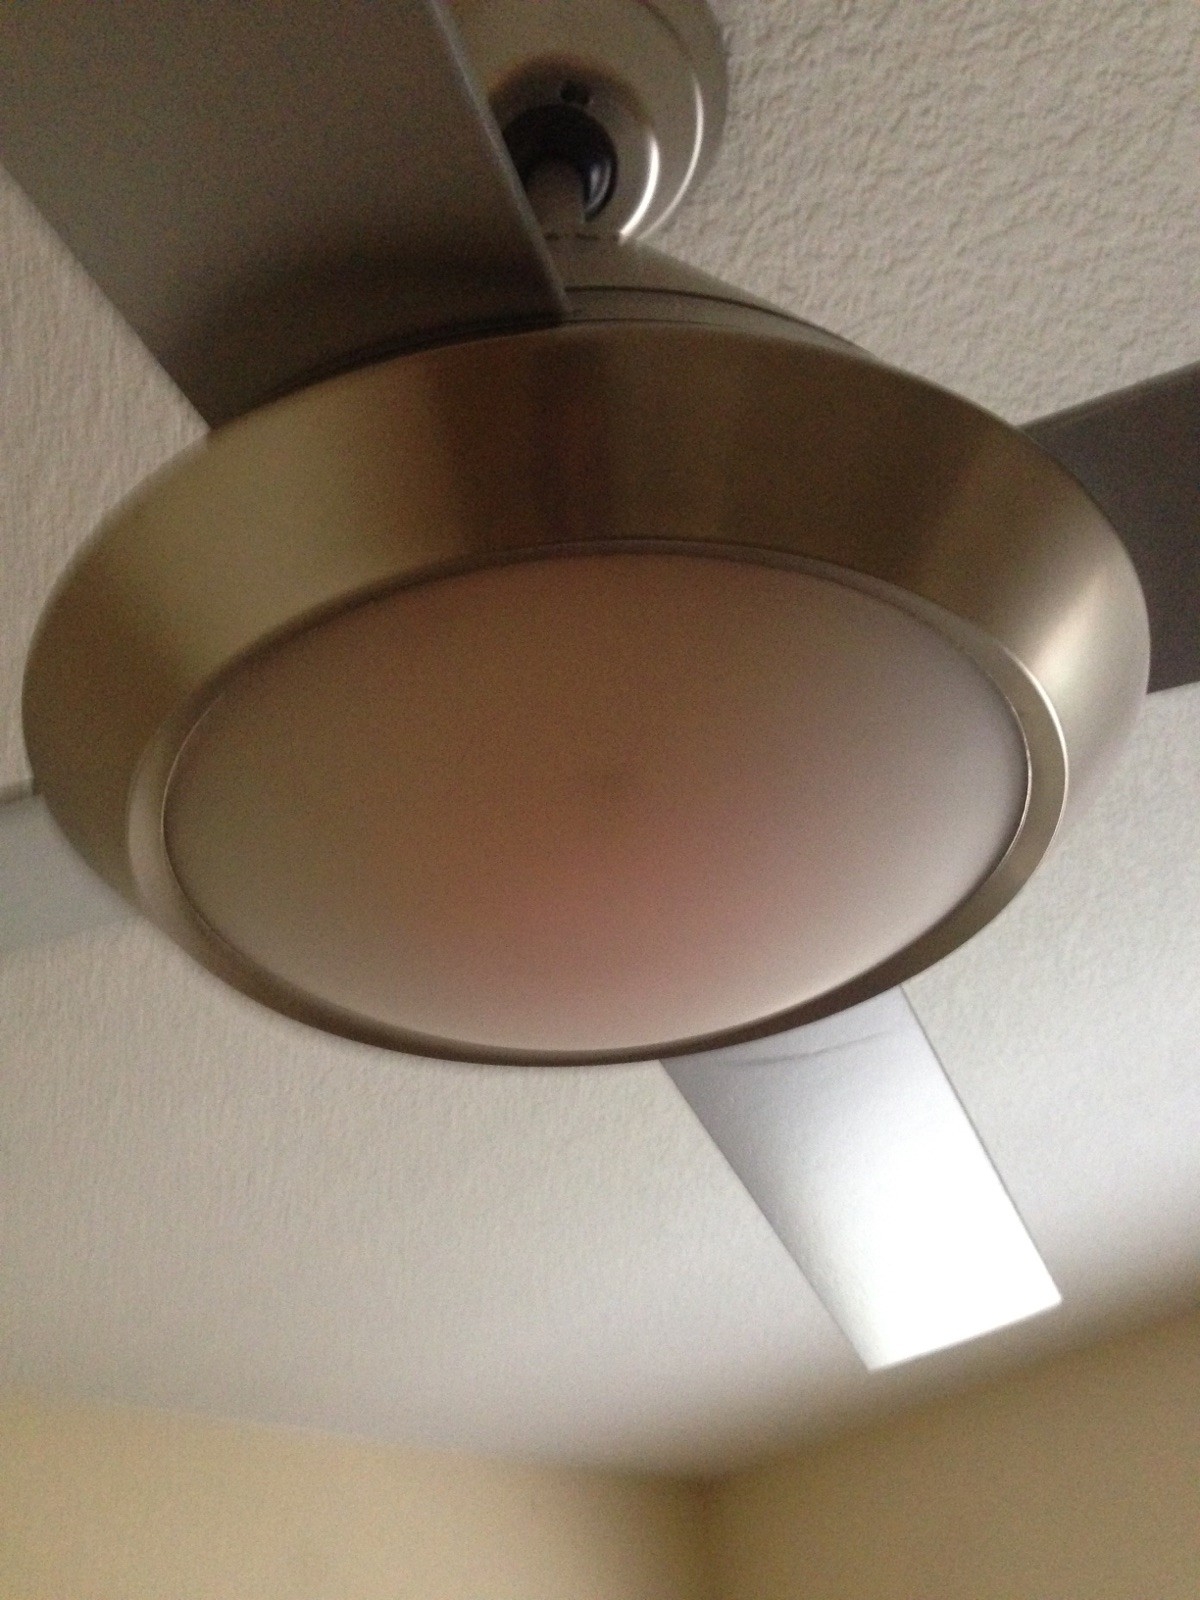 Change Ceiling Fan Light Bulb